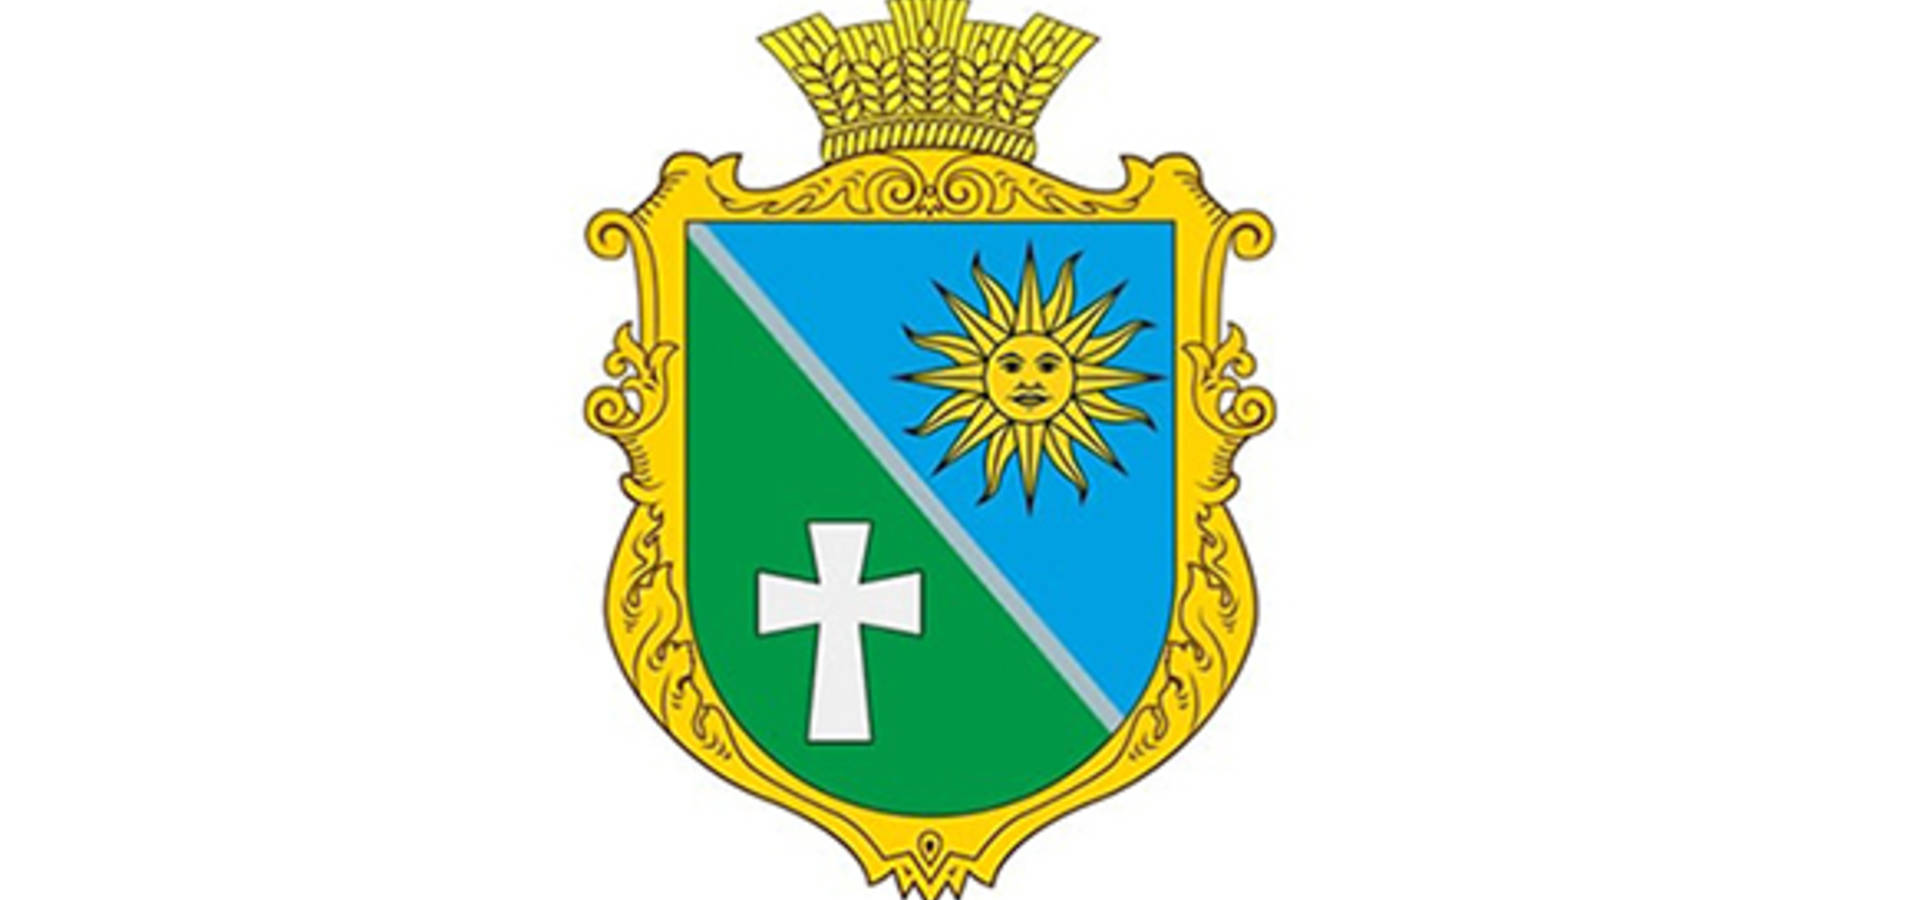 У Війтівцях на Вінниччині з'явиться свій герб, який символізує шляхетність, багатство, справедливість та повагу